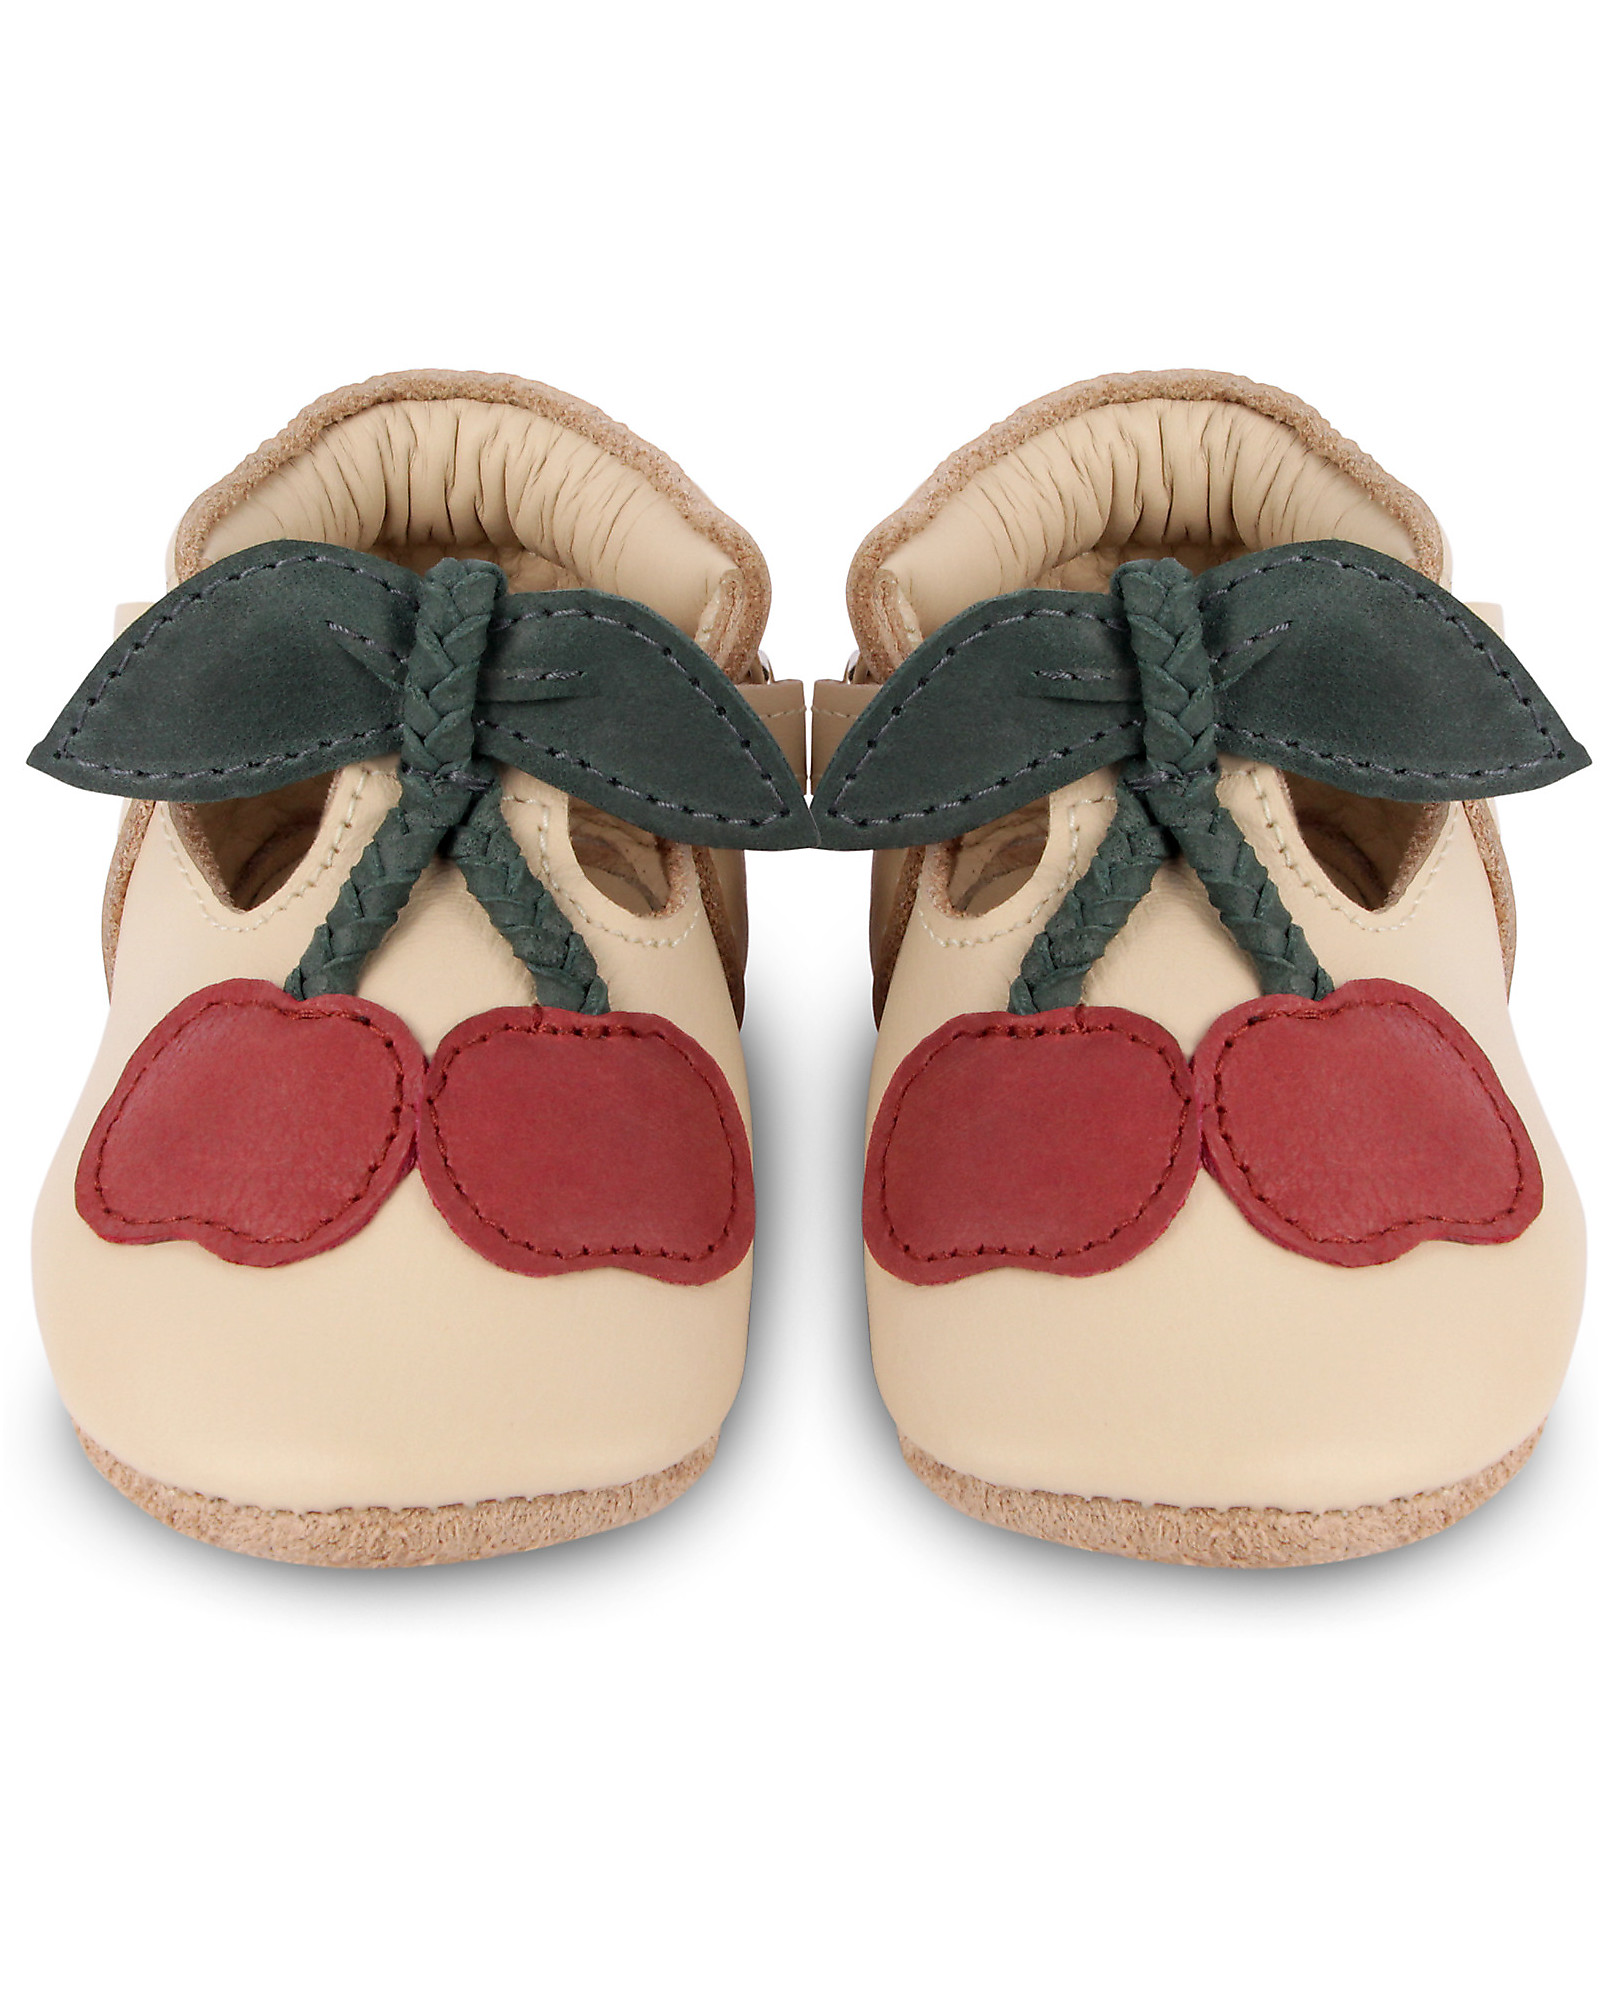 Donsje OUTLET - Nanoe Leather Baby Shoe - Cherry - Velcro